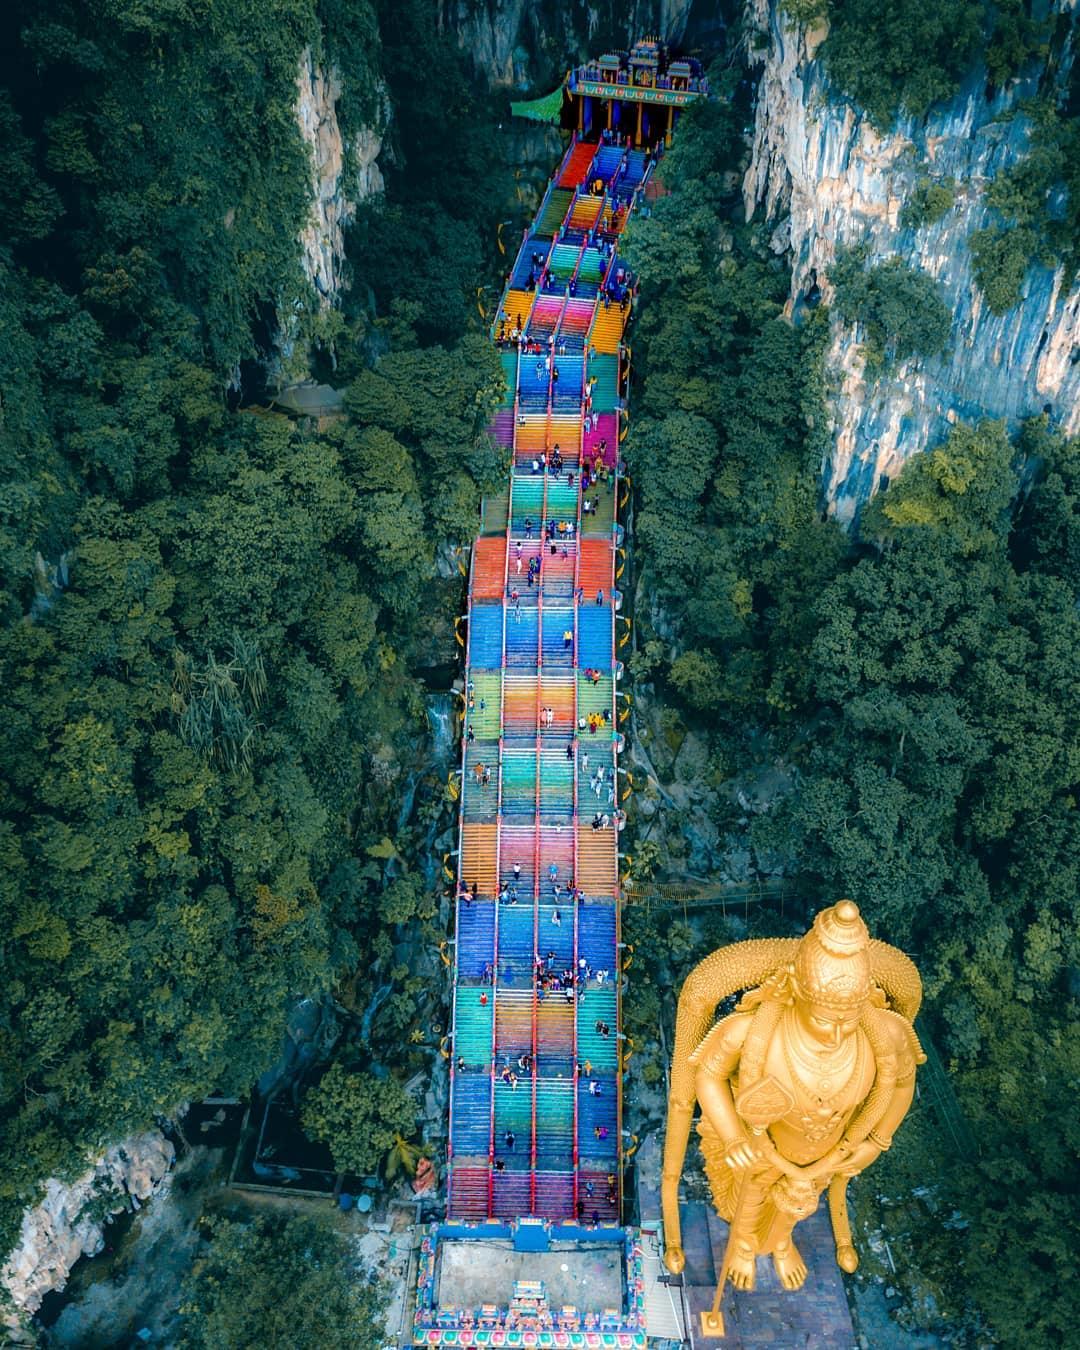  彩虹阶梯，Desmond摄于马来西亚吉隆坡。 